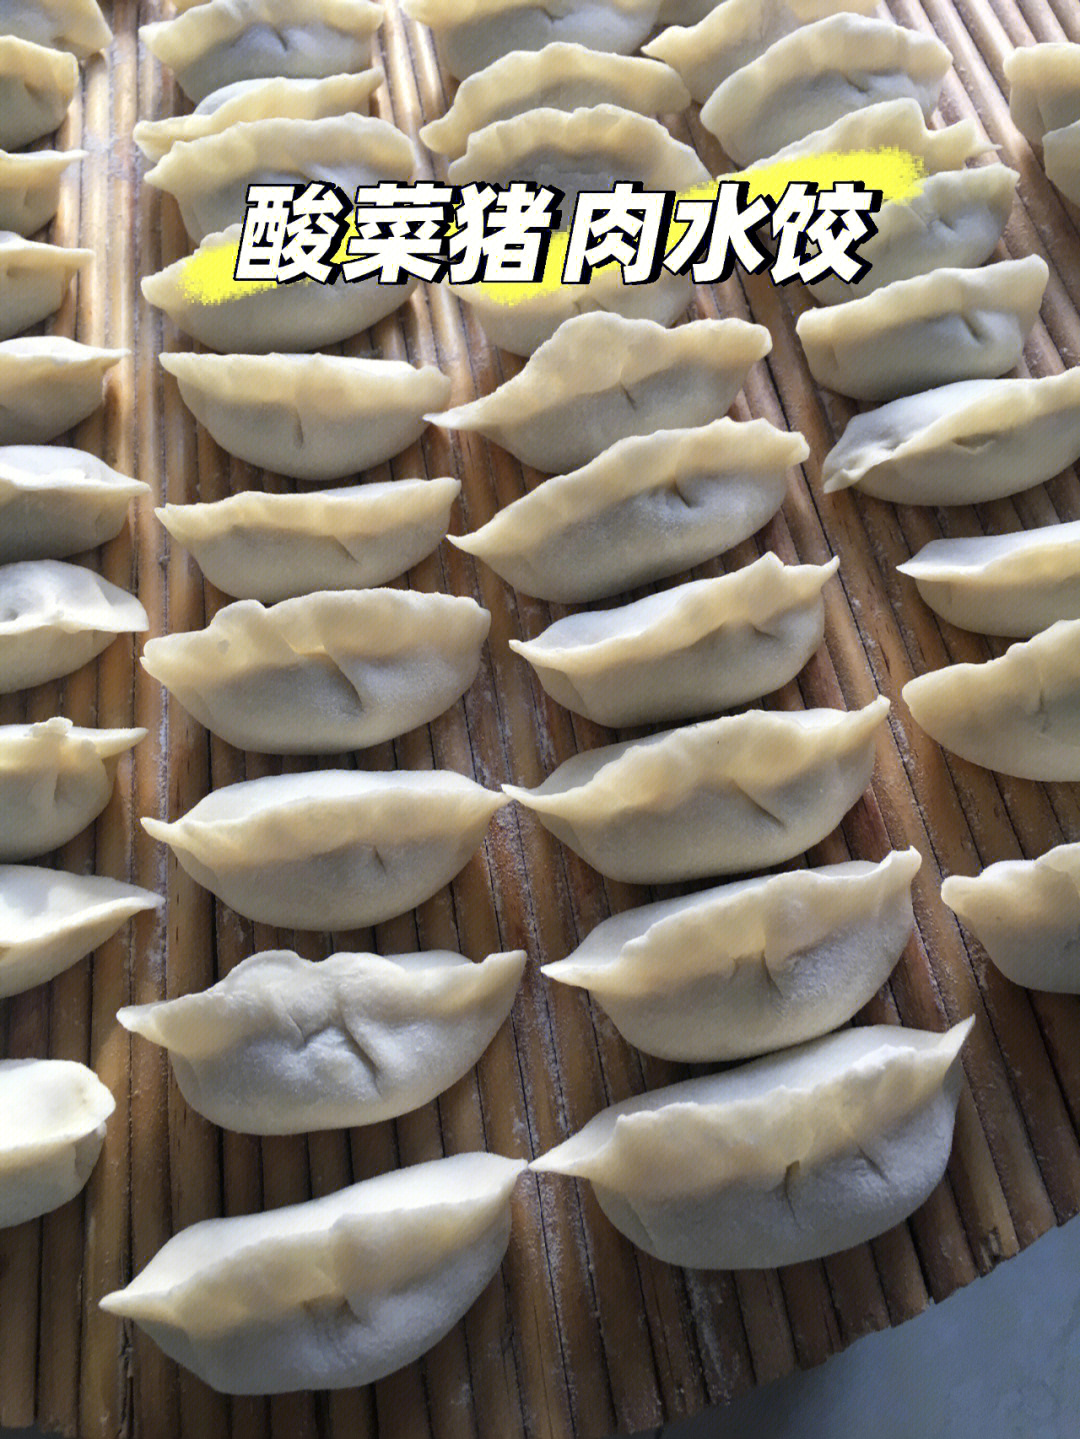 东北水饺的包法步骤图片